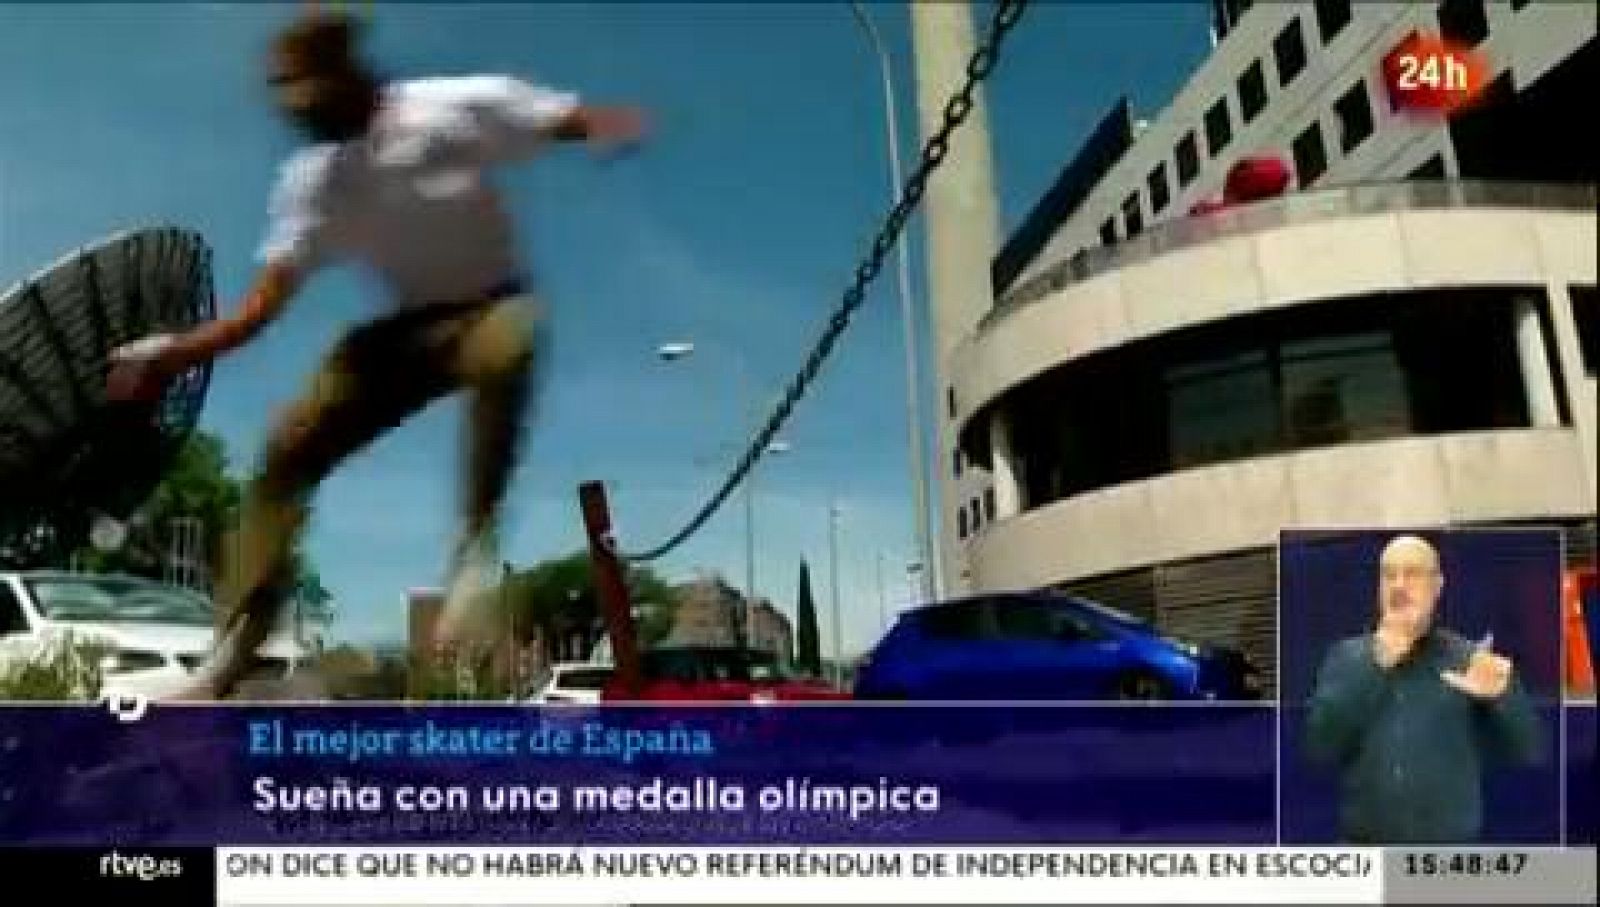 Danny Leon sueña con una medalla olímpica en skate